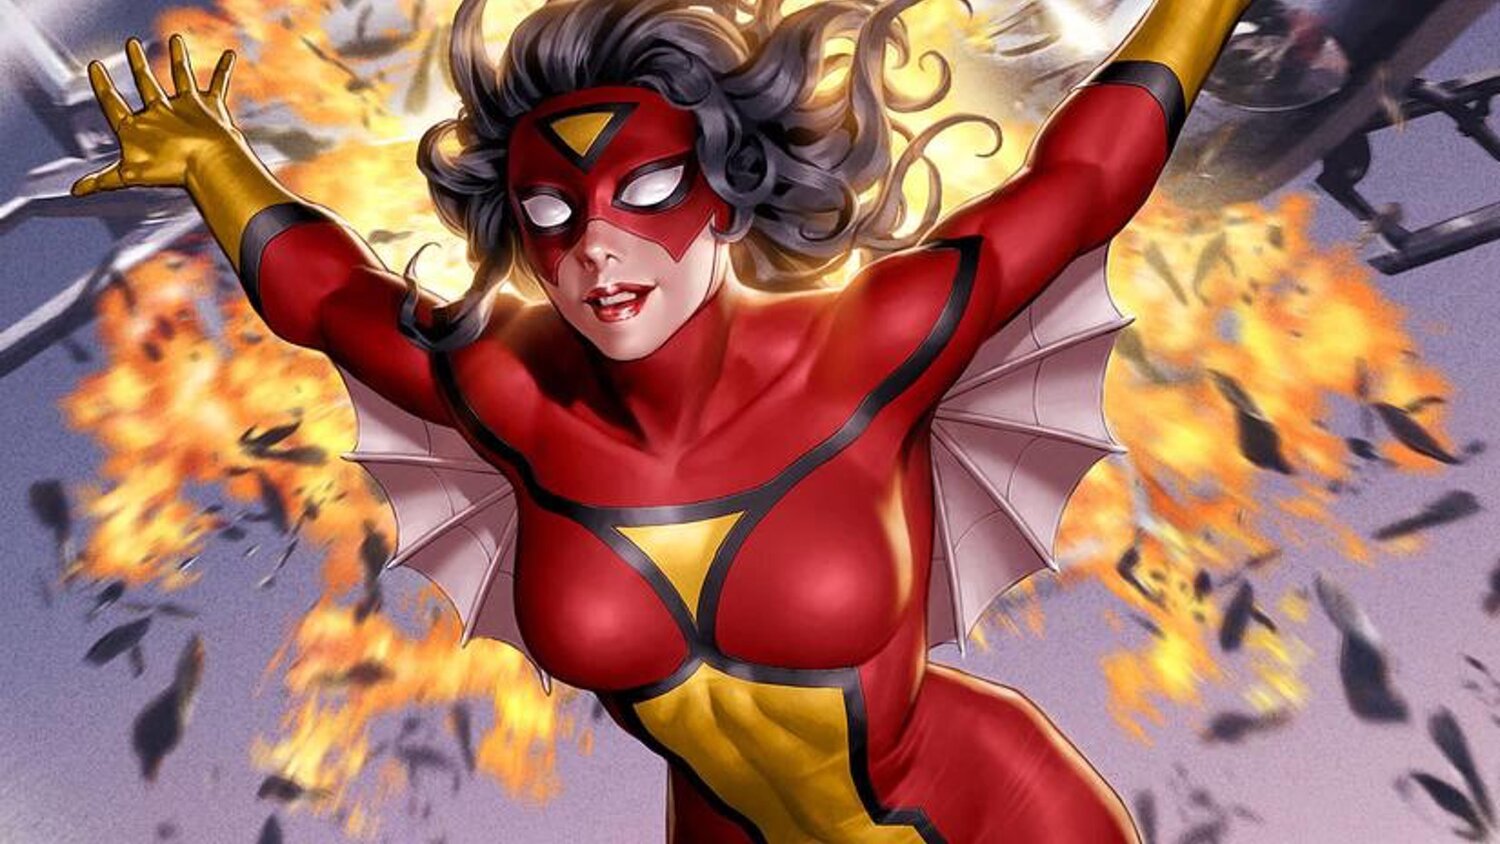 Female Superheroes in Marvel